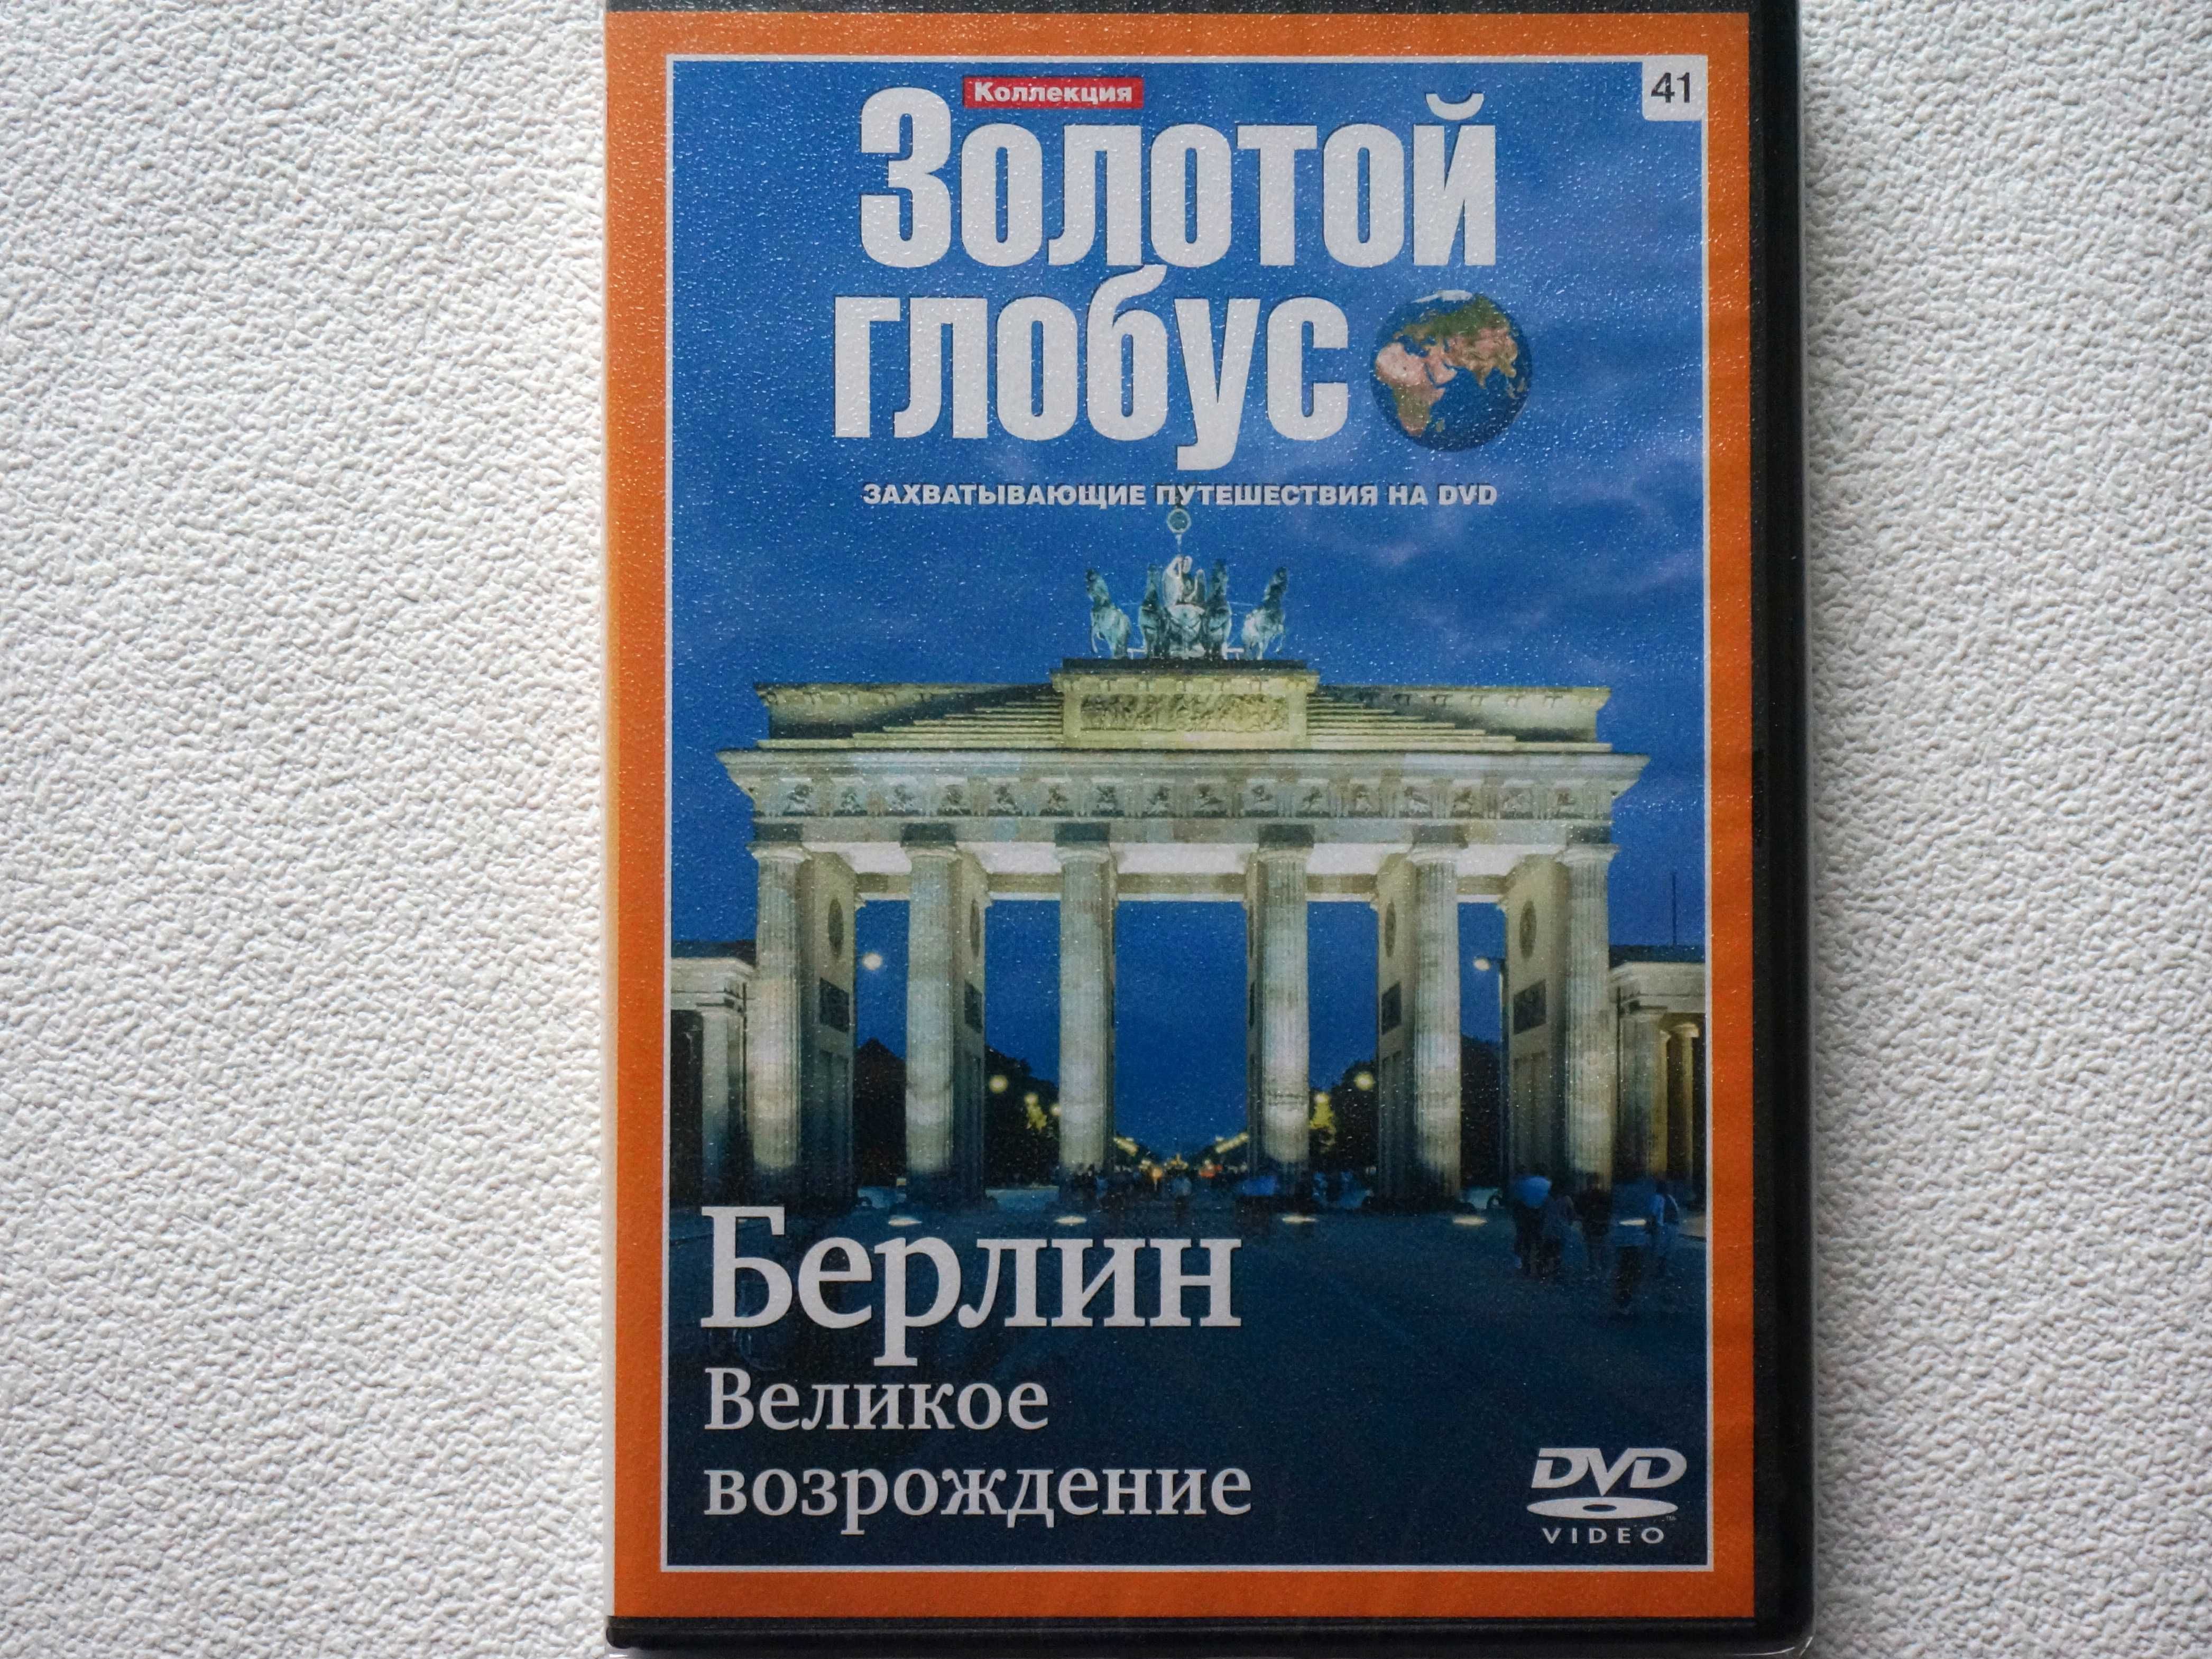 Коллекция ДВД-дисков "Золотой Глобус"